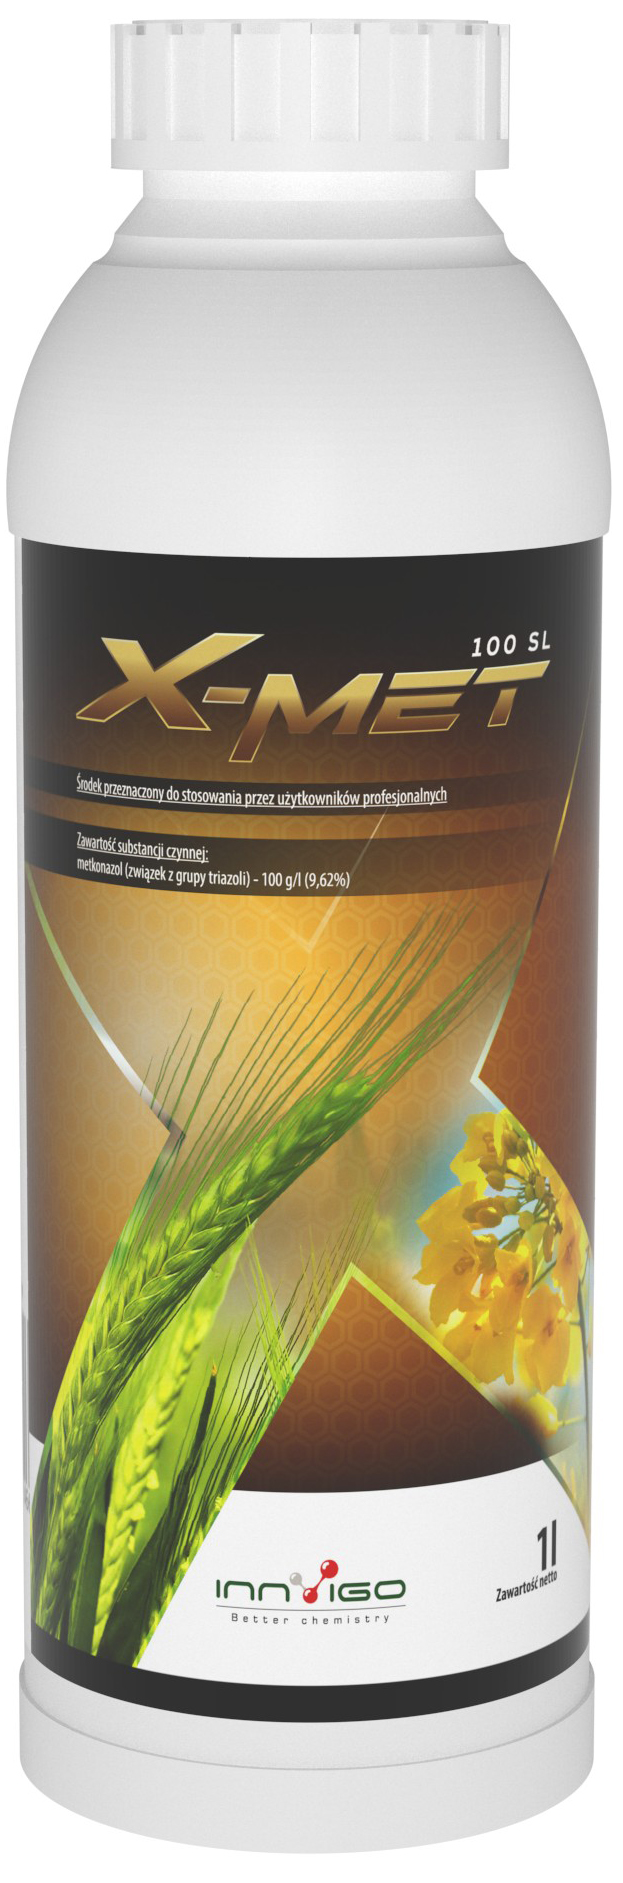 Fungicyd X-Met - Oprysk na grzyba w rzepaku, triazol